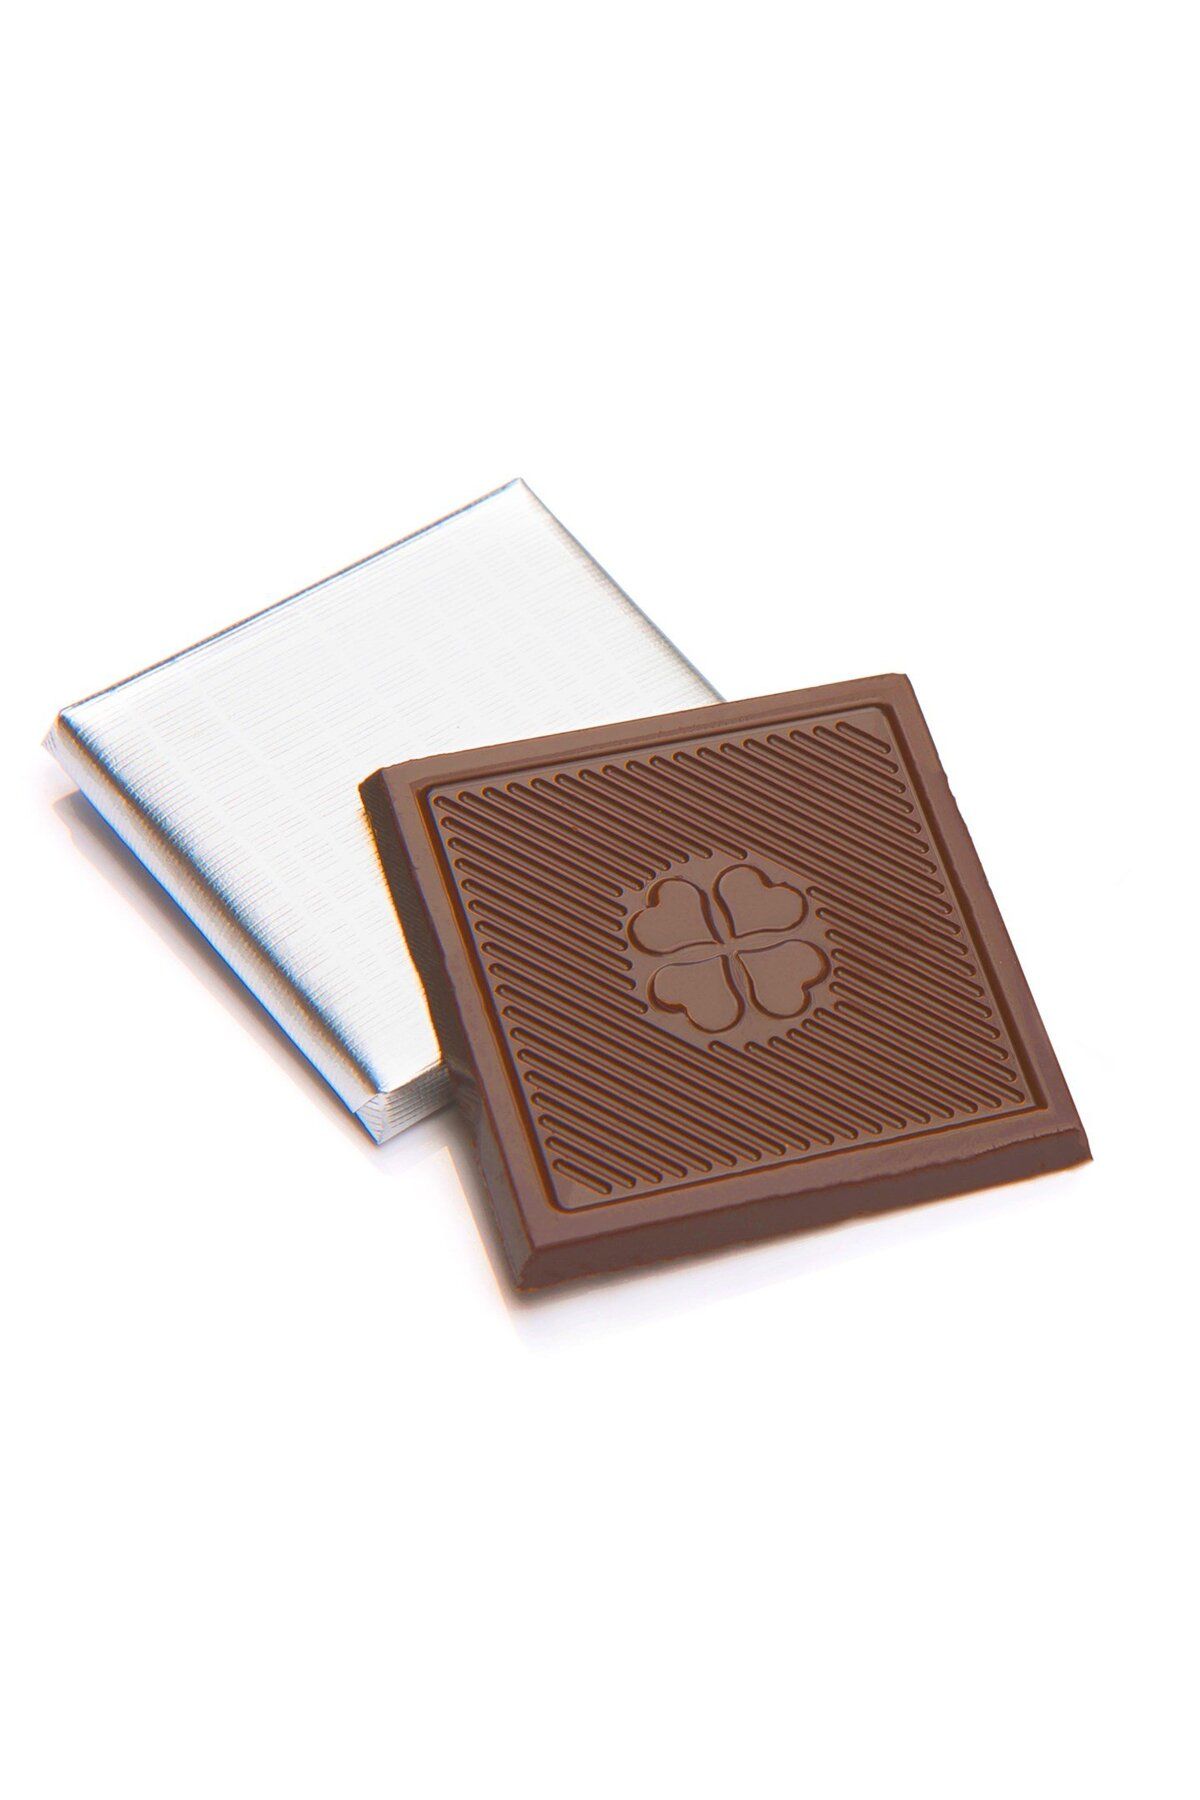 Melodi Çikolata Sargılı Sütlü Madlen Gümüş 500g - Ikramlık Çikolata